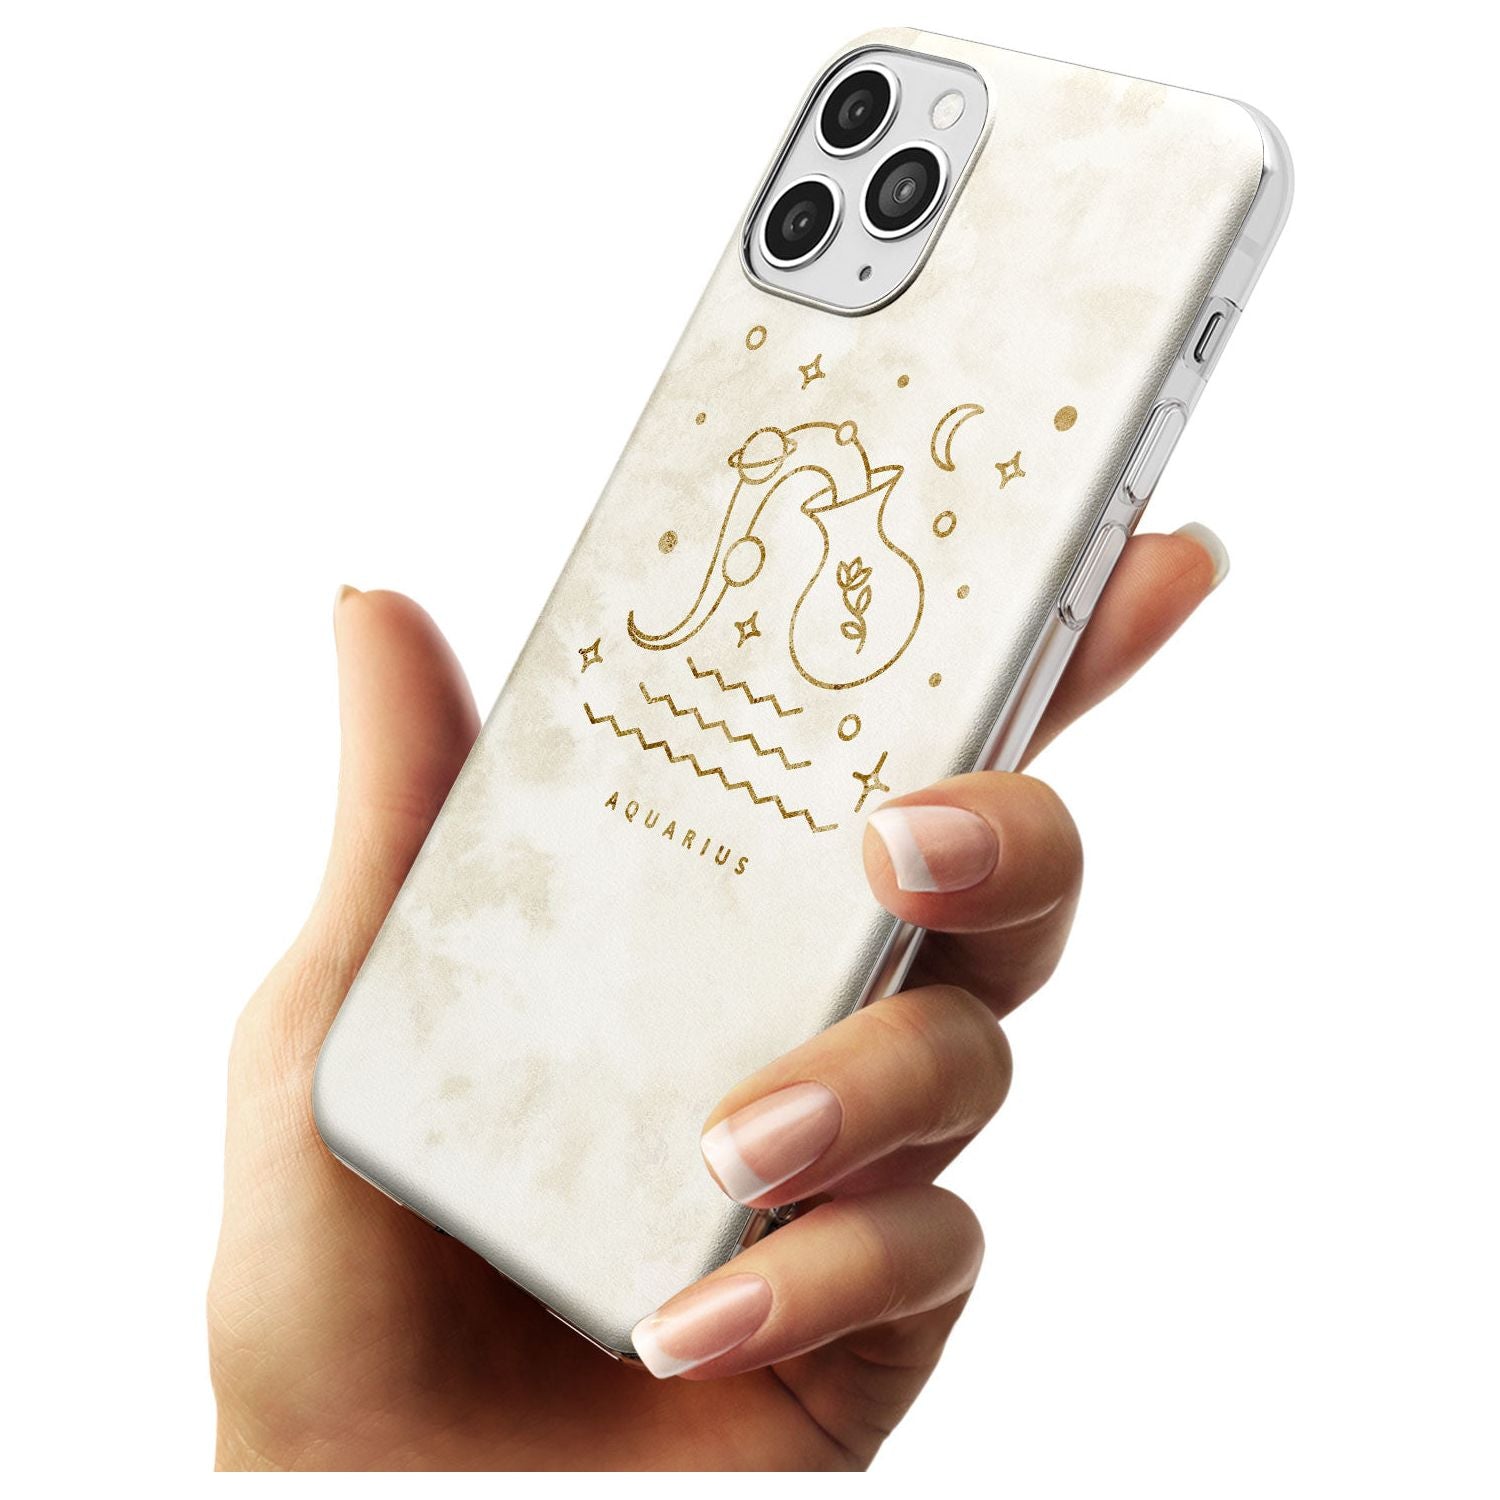 Aquarius Emblem - Solid Gold Marbled Design Slim TPU Phone Case for iPhone 11 Pro Max